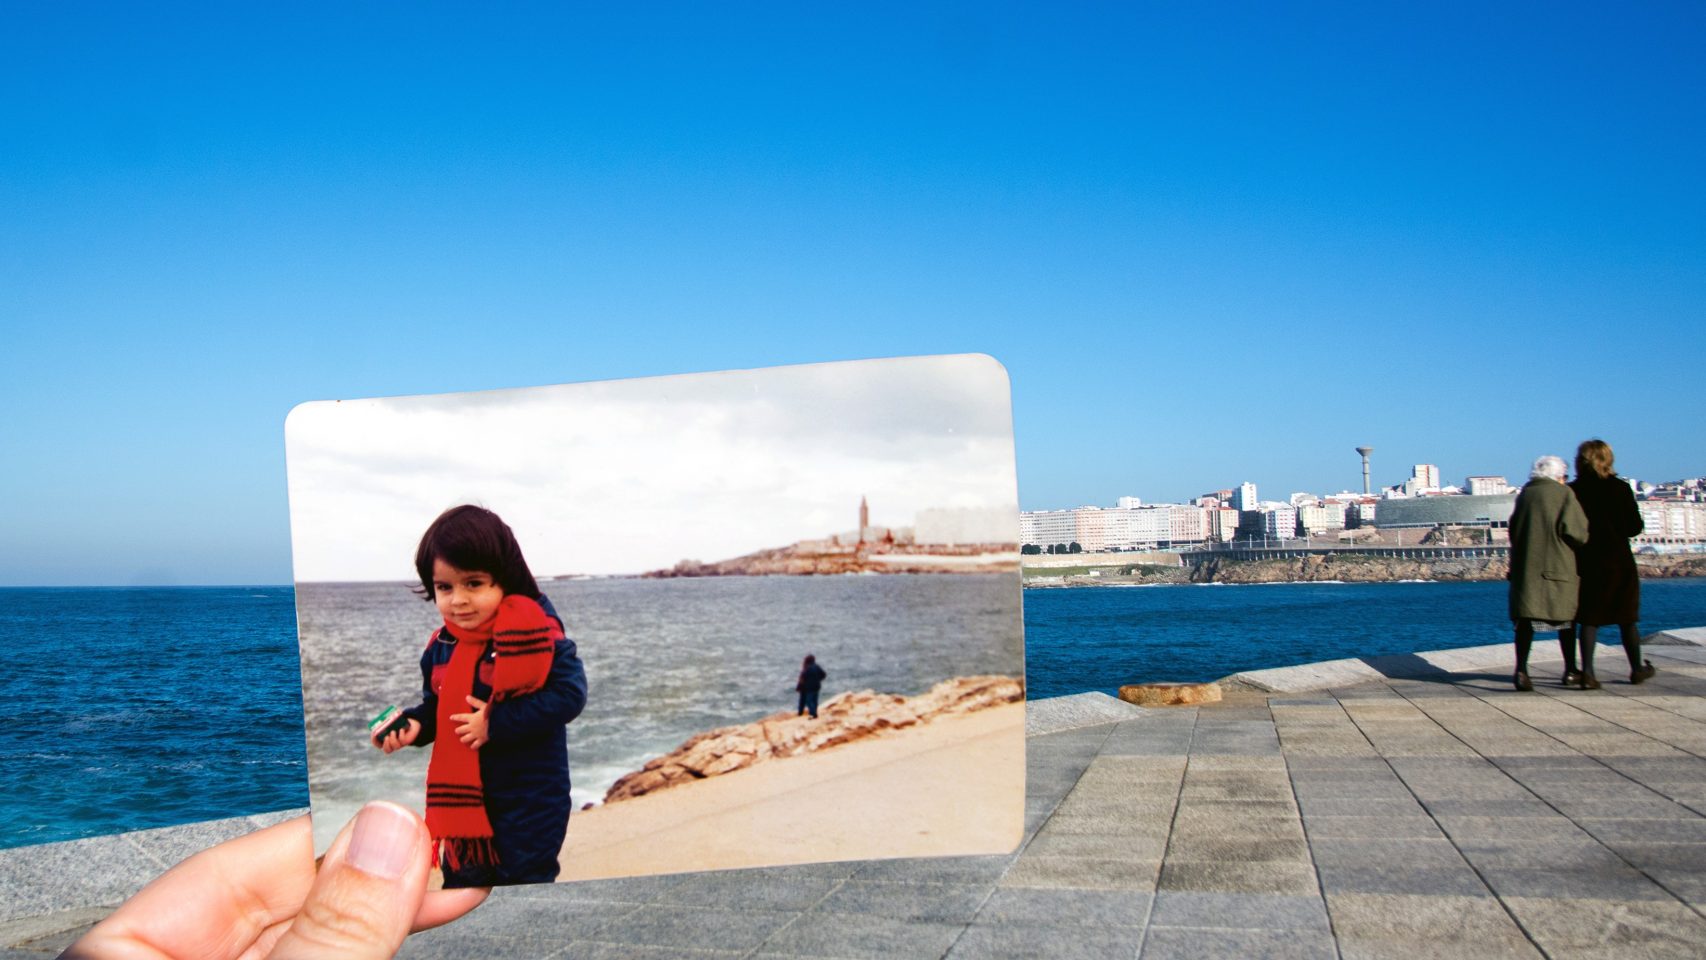 Imagen del proyecto "Coruña ayer y yo".